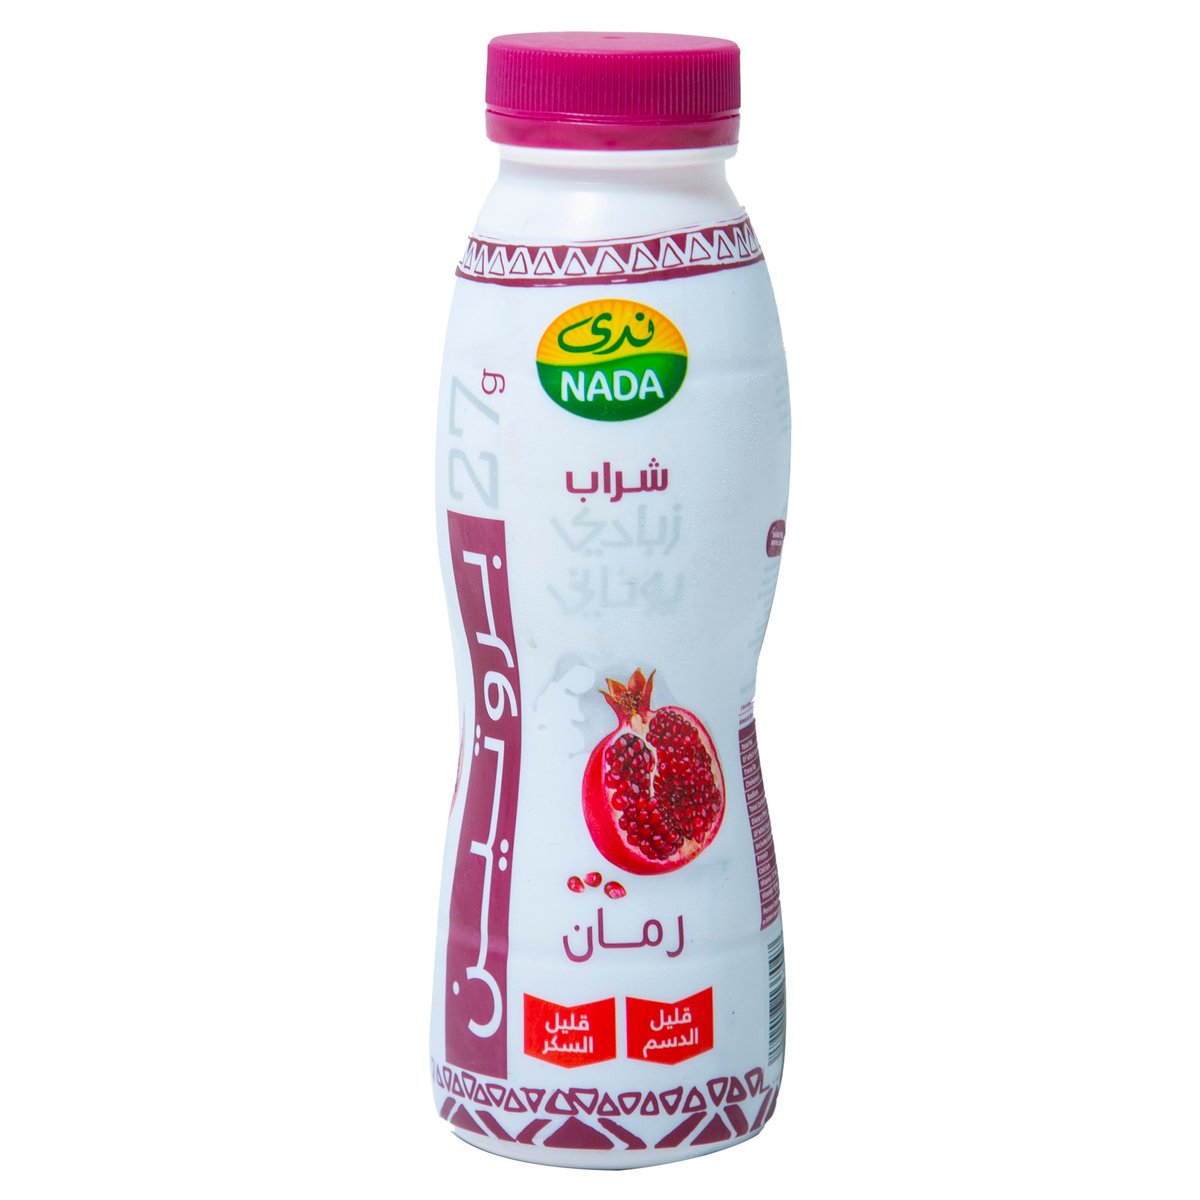 اشتري قم بشراء ندى زبادي يوناني بالرمان 330 مل Online at Best Price من الموقع - من لولو هايبر ماركت Flavoured Yoghurt في السعودية